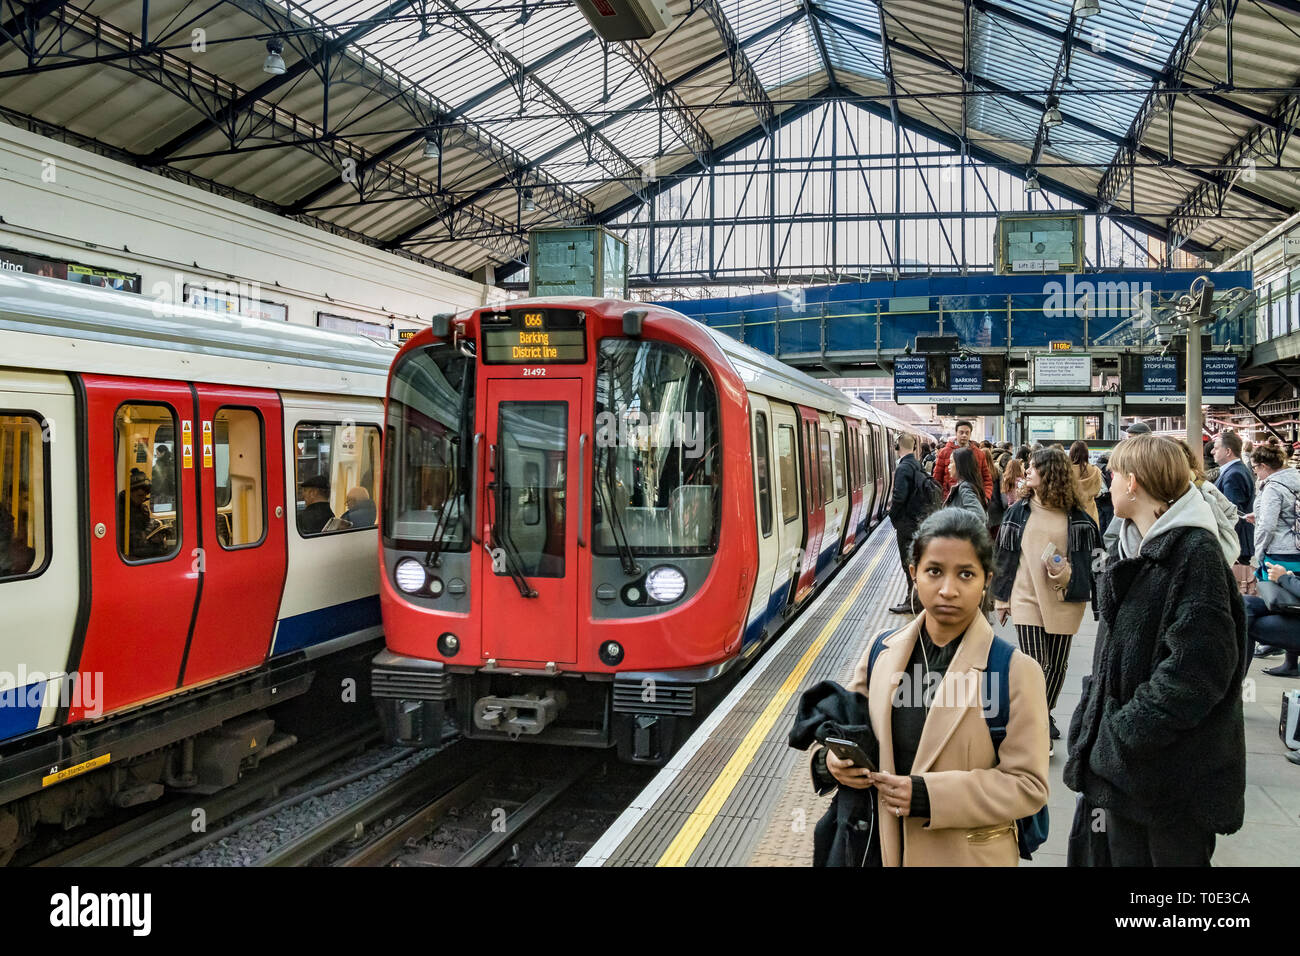 Les gens attendent sur la plate-forme comme un train District Line se met à la station de métro Earls court, Londres, Royaume-Uni Banque D'Images